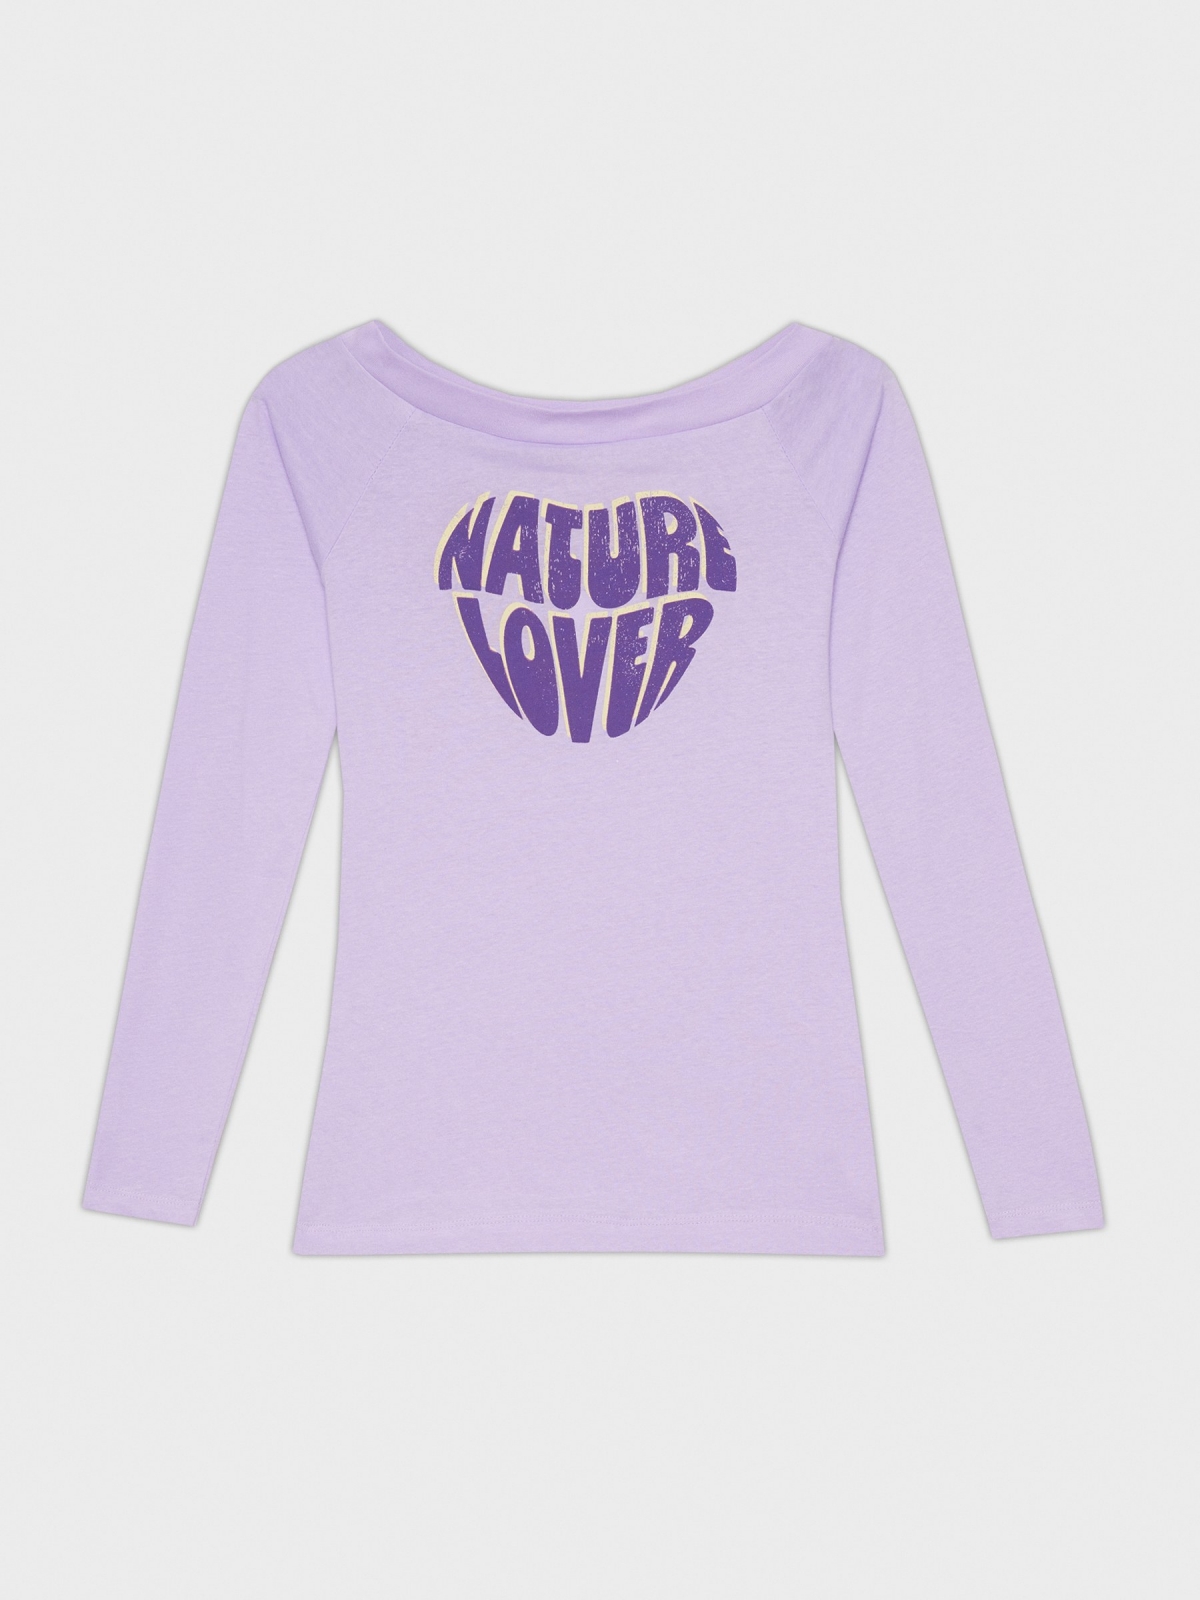  T-shirt do Natural Lover lilás